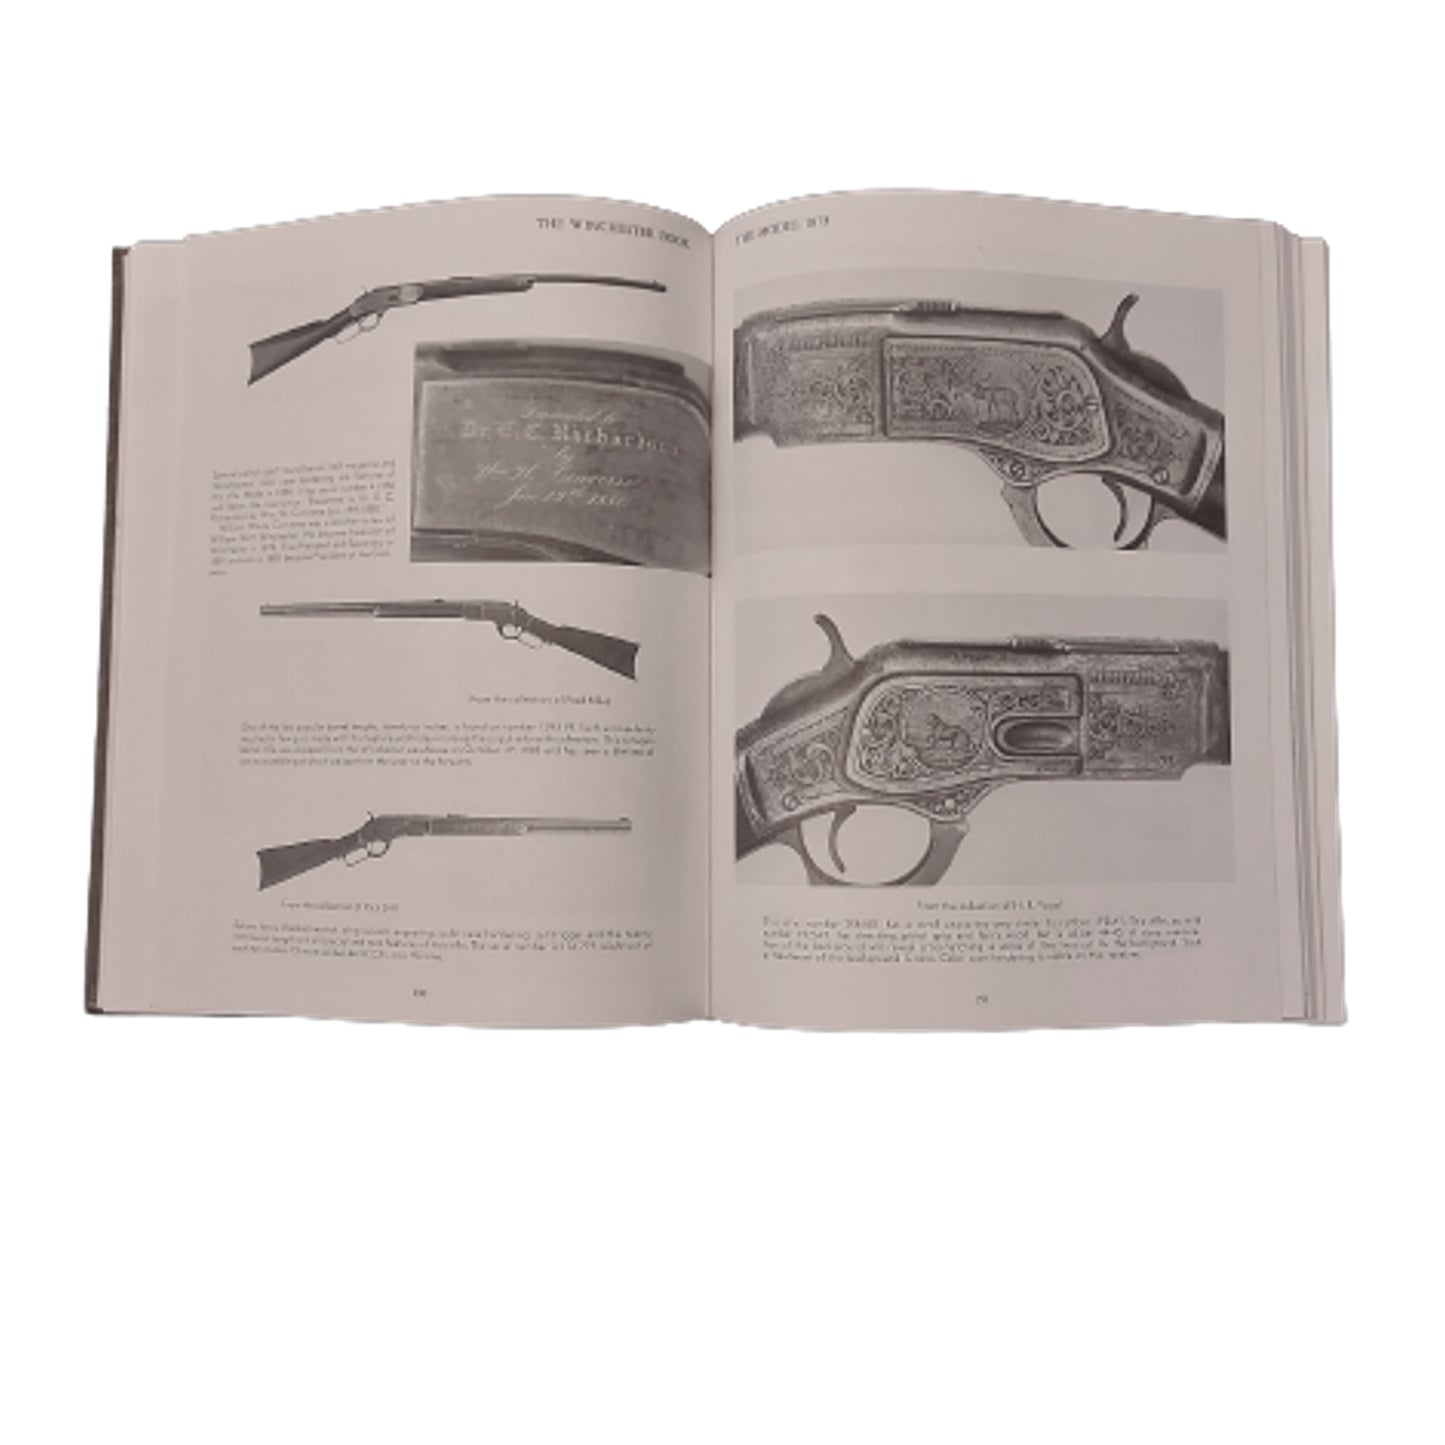 The Winchester Book -1 0f 1000